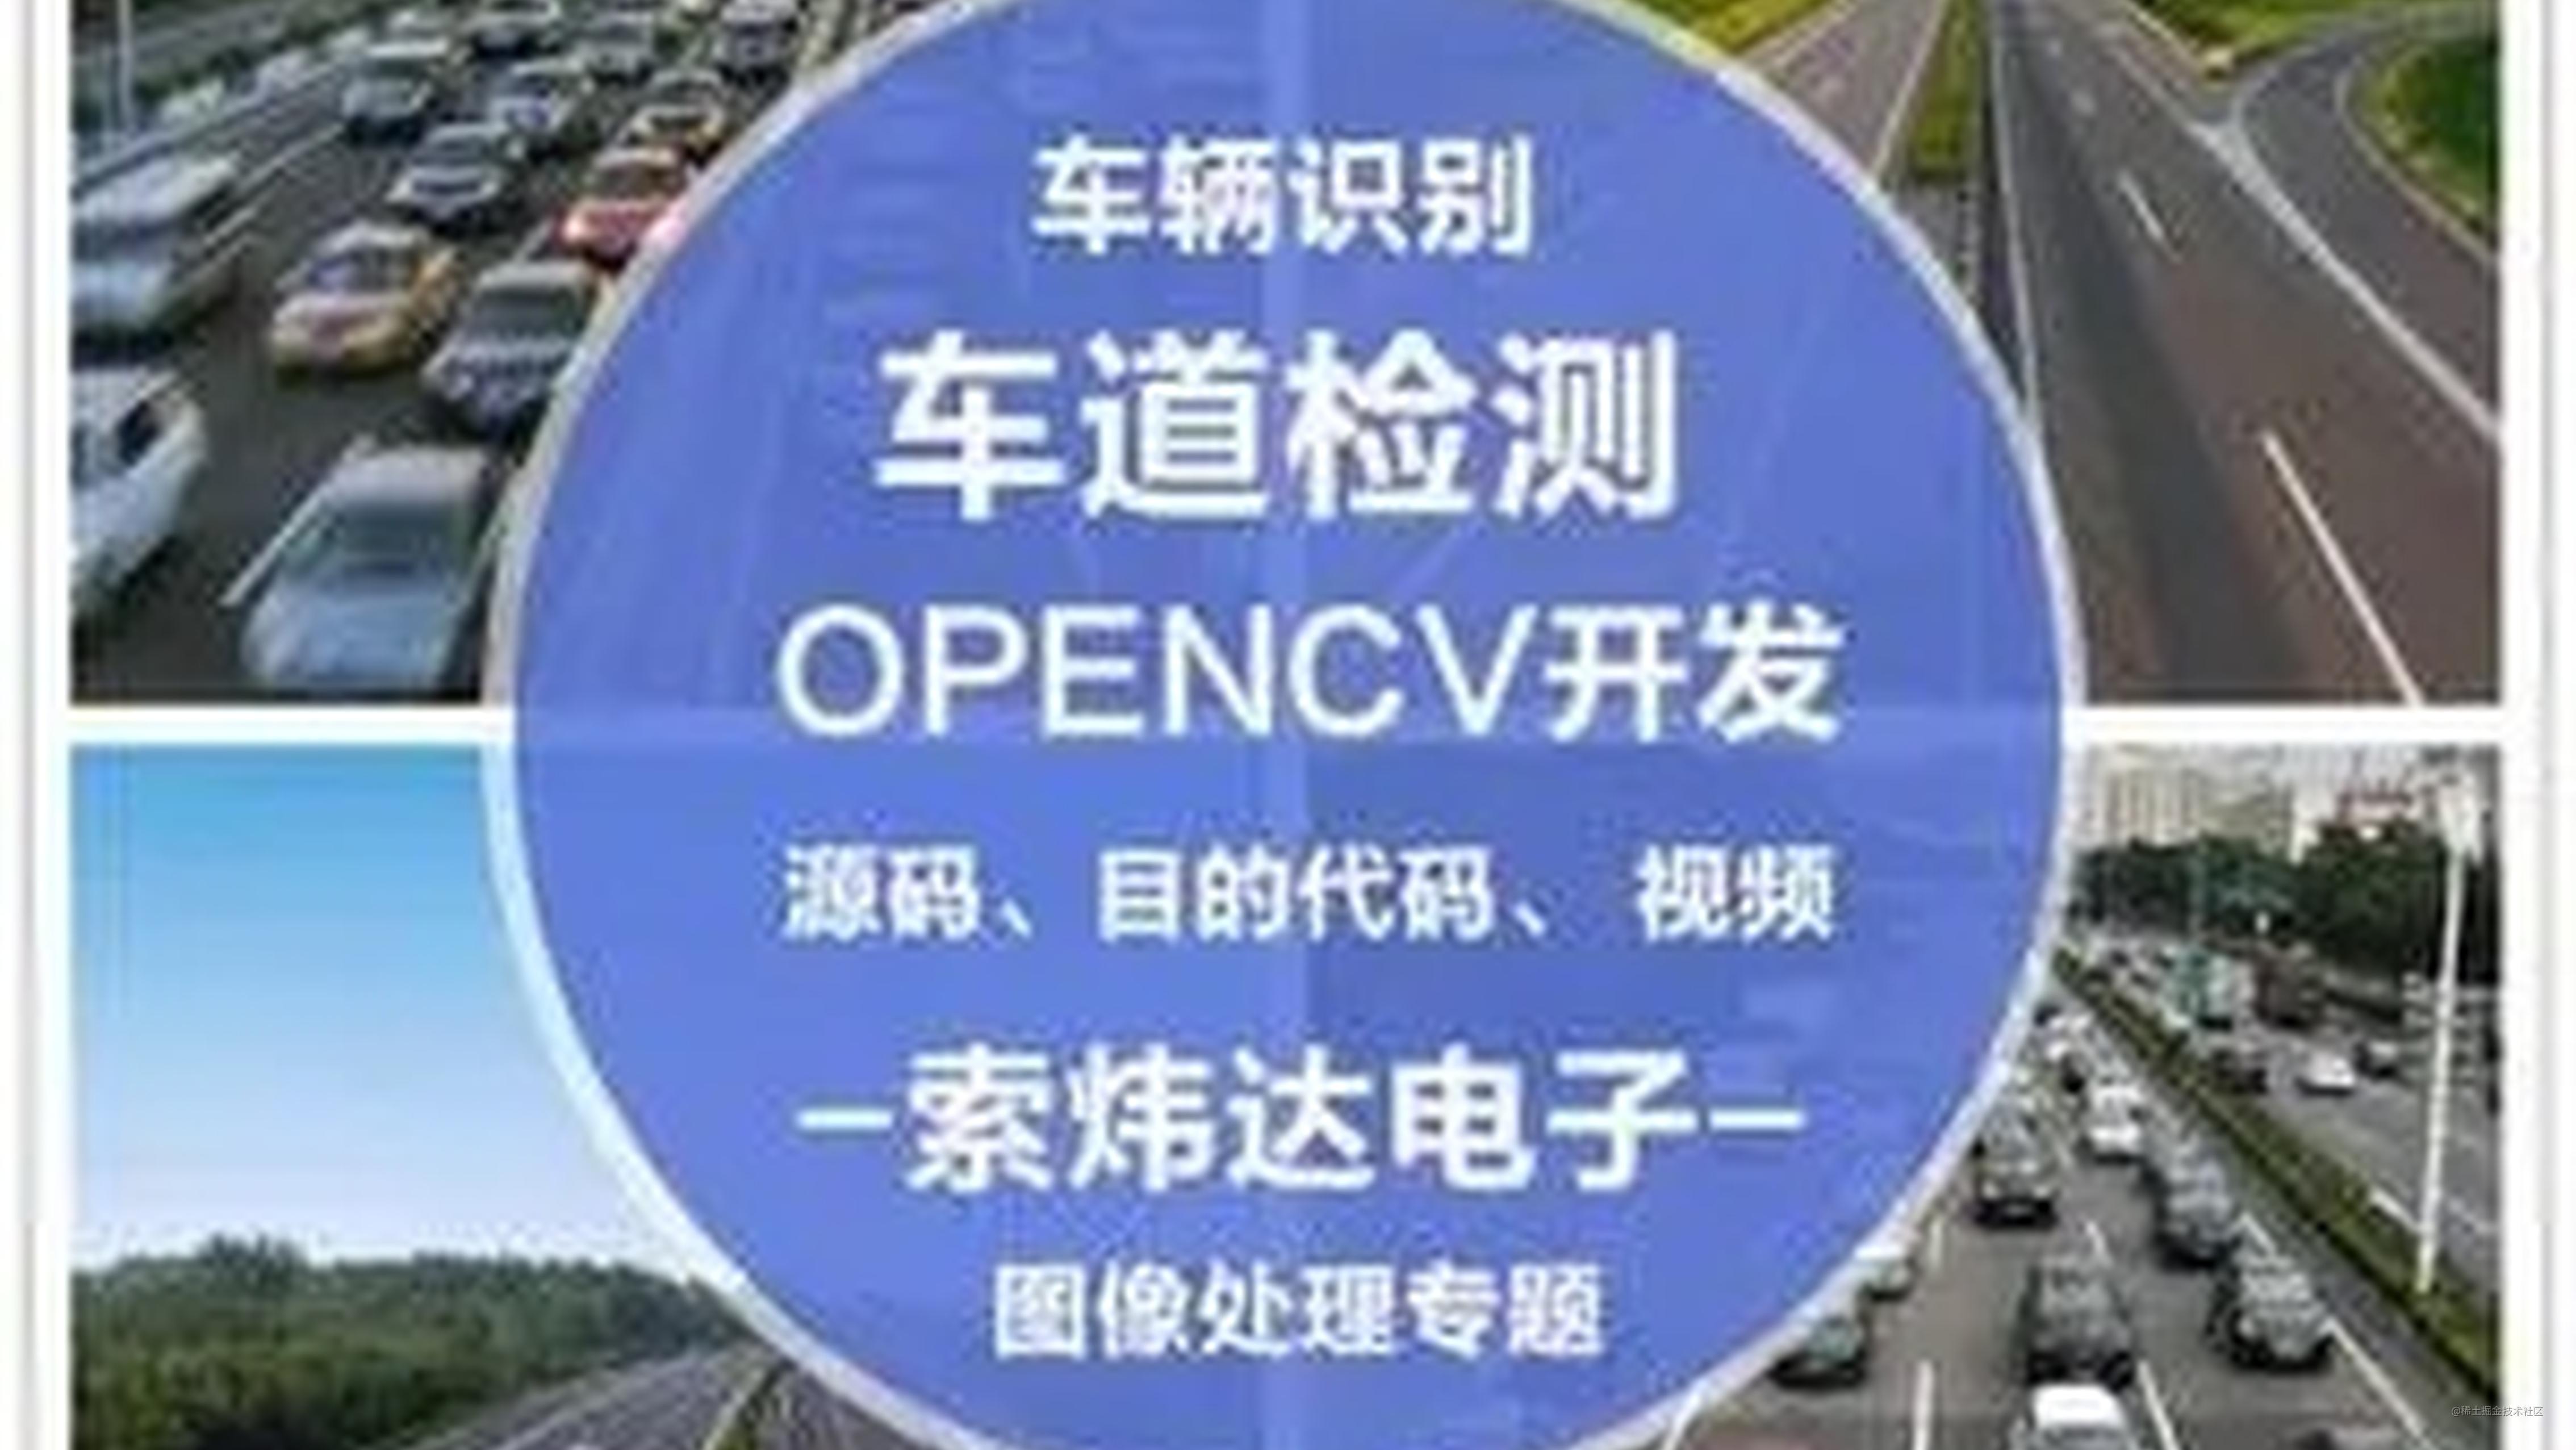 基于OpenCV 的车牌识别